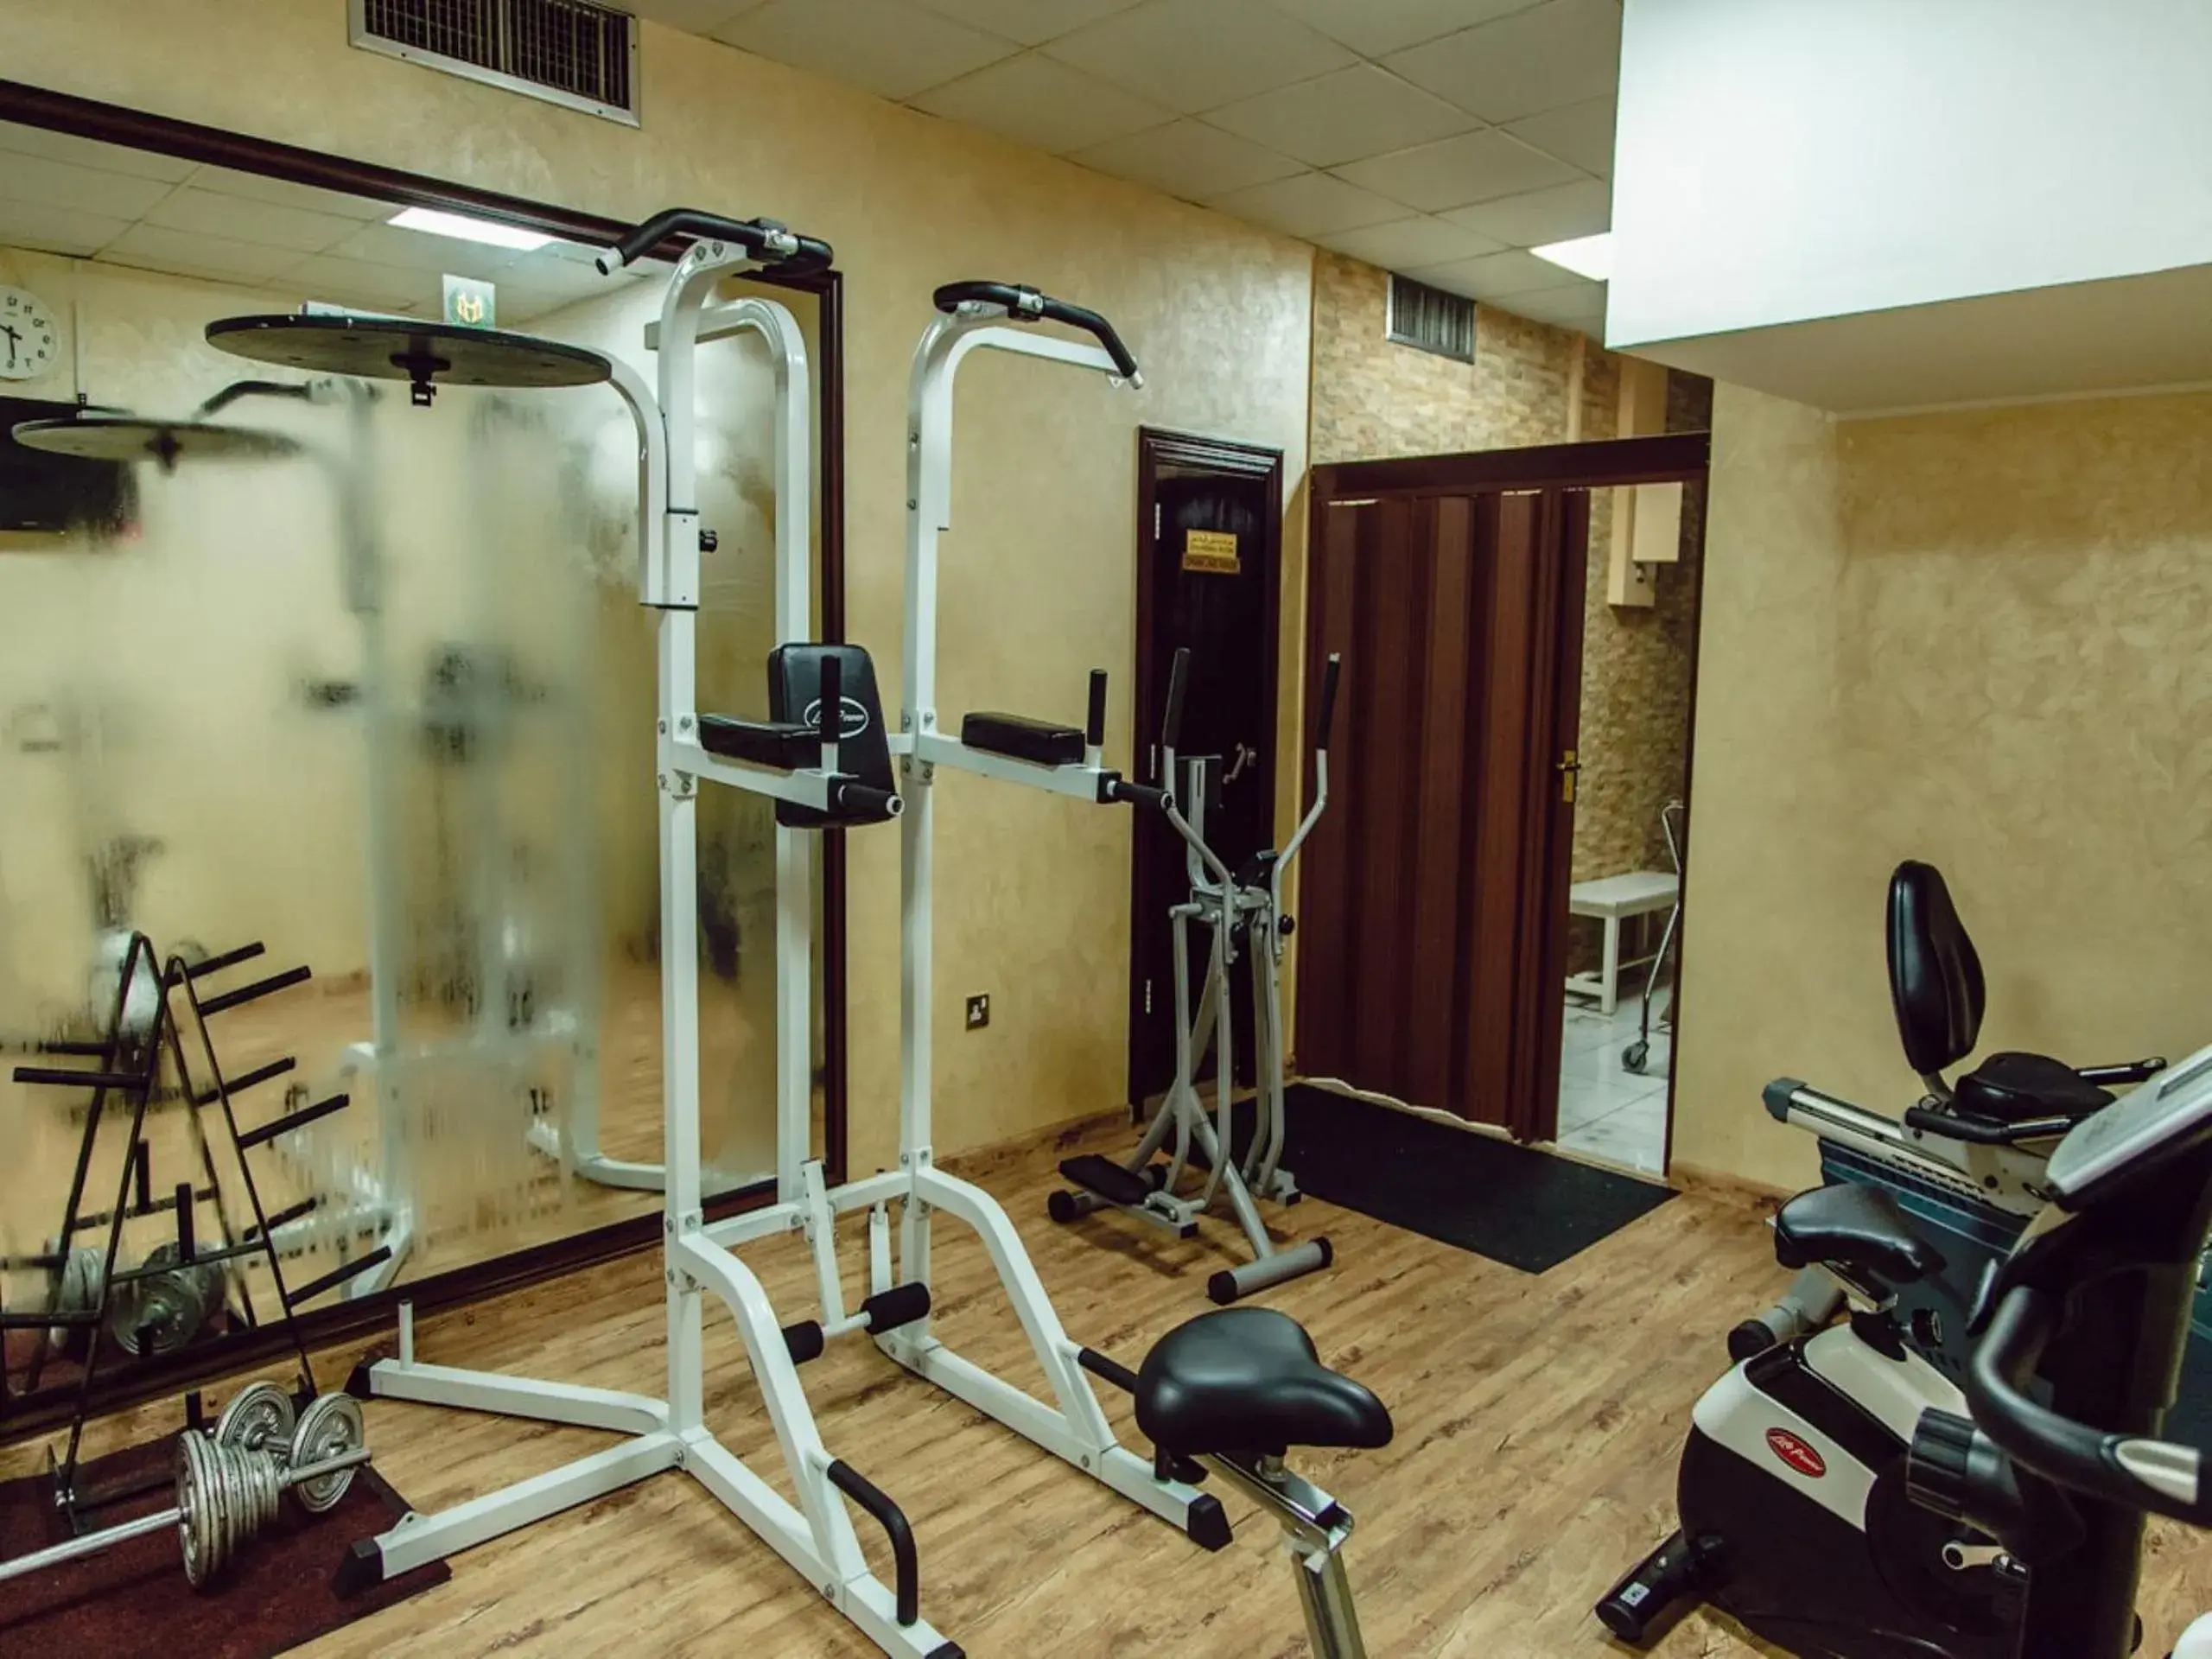 Fitness centre/facilities, Fitness Center/Facilities in Sharjah Carlton Hotel